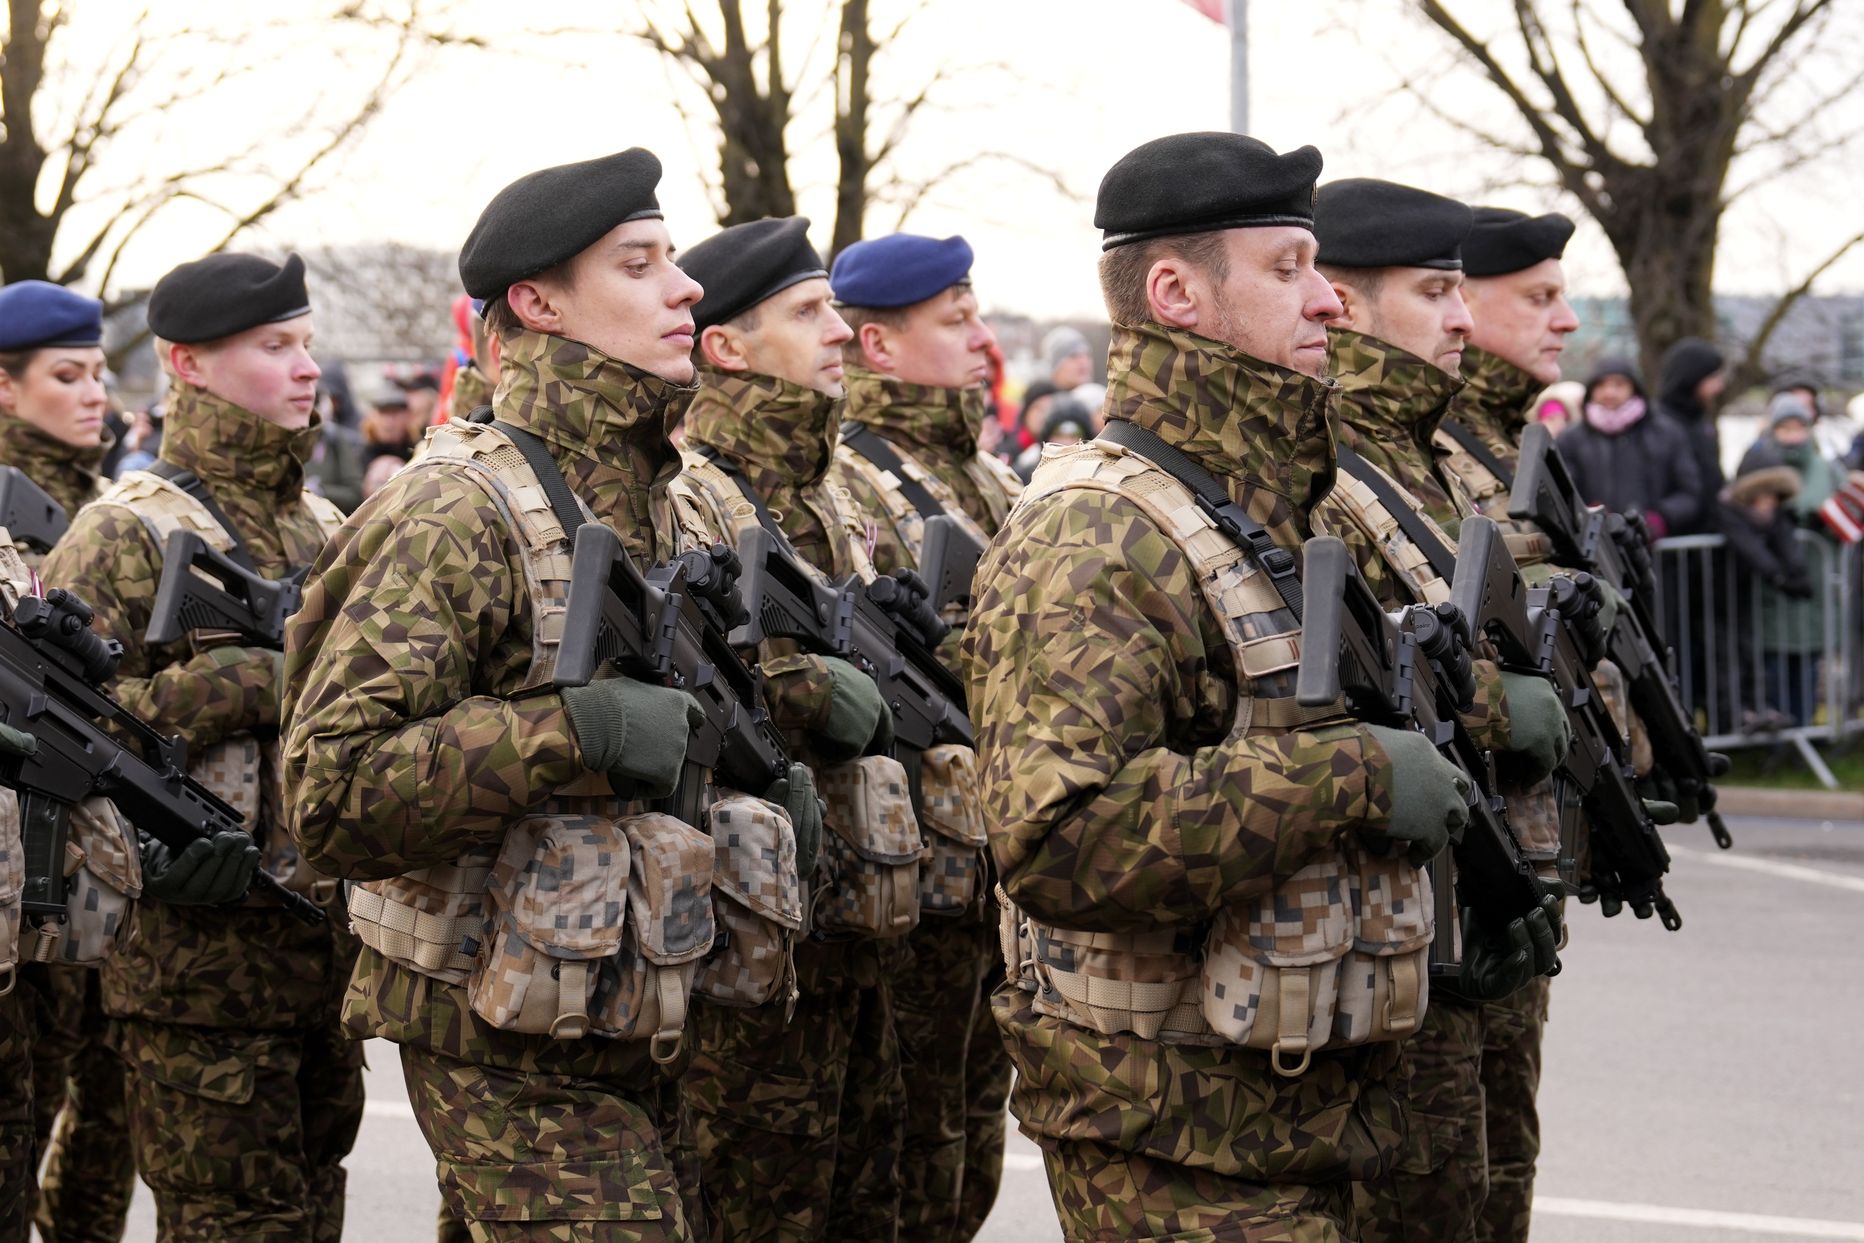 Atzīmējot Latvijas Republikas proklamēšanas 104. gadadienu, 11. novembra krastmalā notiek militārā parāde, kurā piedalās gan Latvijas, gan sabiedroto bruņoto spēku karavīri un militārā tehnika, kā arī Iekšlietu ministrijas pakļautības dienestu pārstāvji un tehnika.